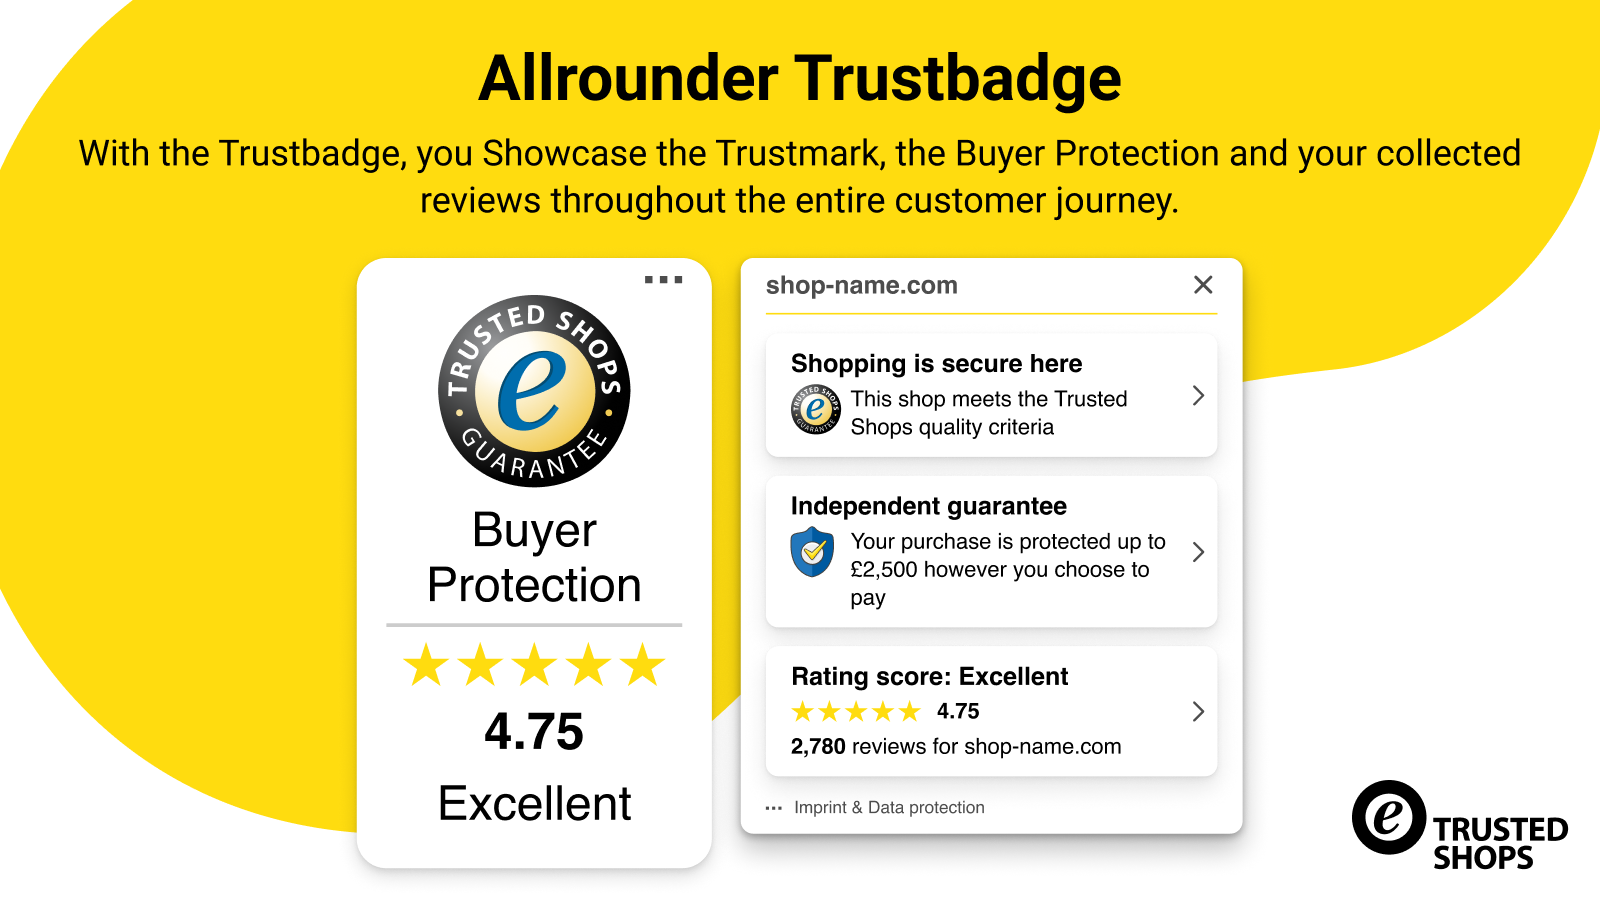 Exiba o Trustmark, Proteção ao Comprador e avaliações